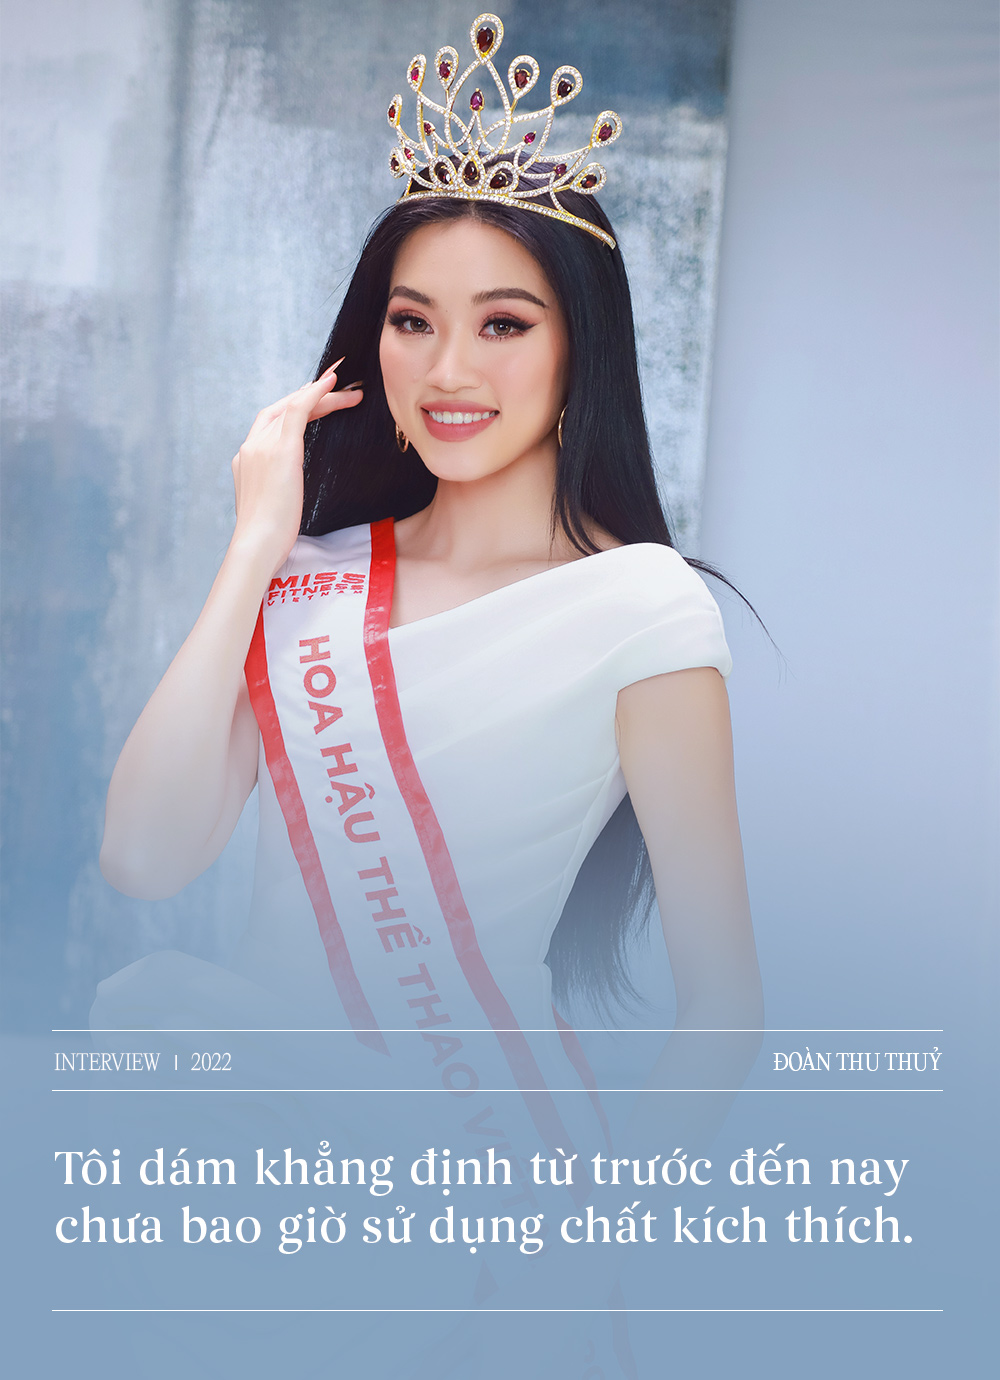 Giao lưu cùng Top 3 Hoa hậu Thể thao Việt Nam: Một lần nói rõ những lùm xùm hậu đăng quang, nhận xét thẳng thắn về Lê Bống  - Ảnh 4.